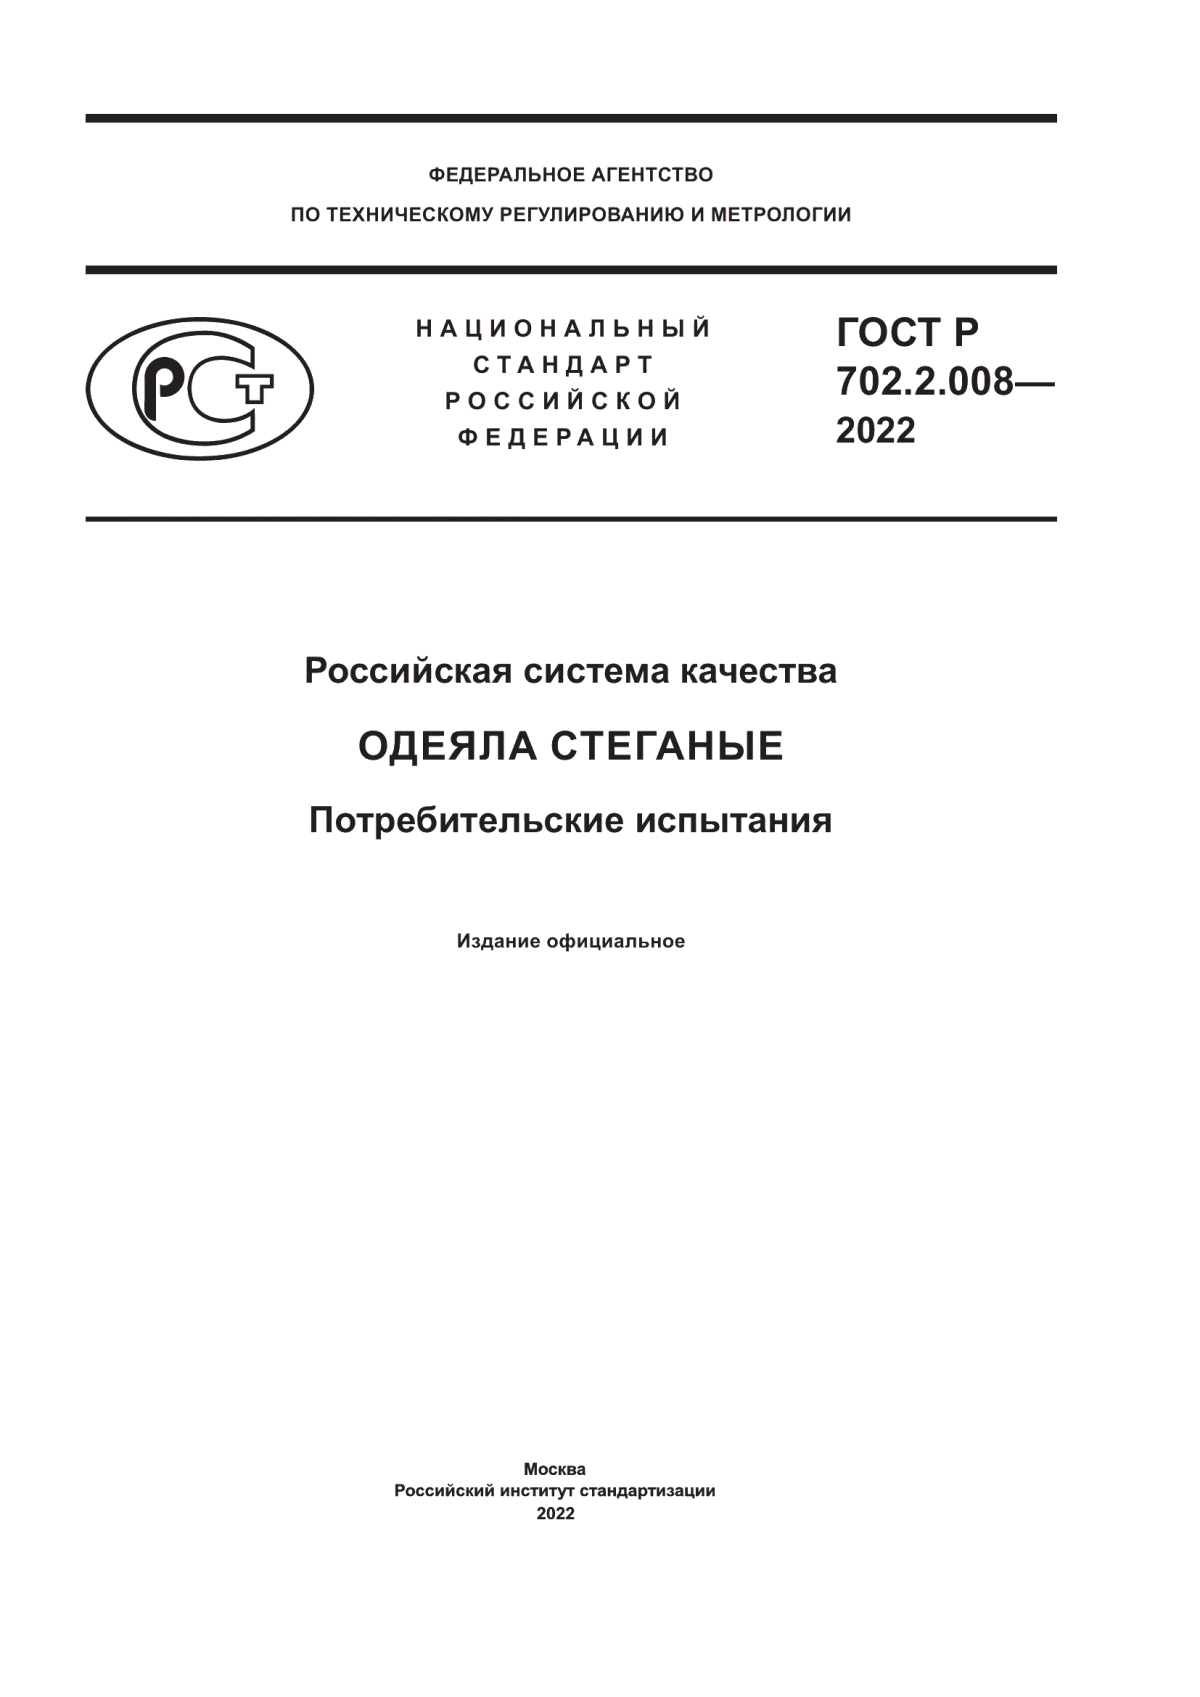 ГОСТ Р 702.2.008-2022 Российская система качества. Одеяла стеганые. Потребительские испытания